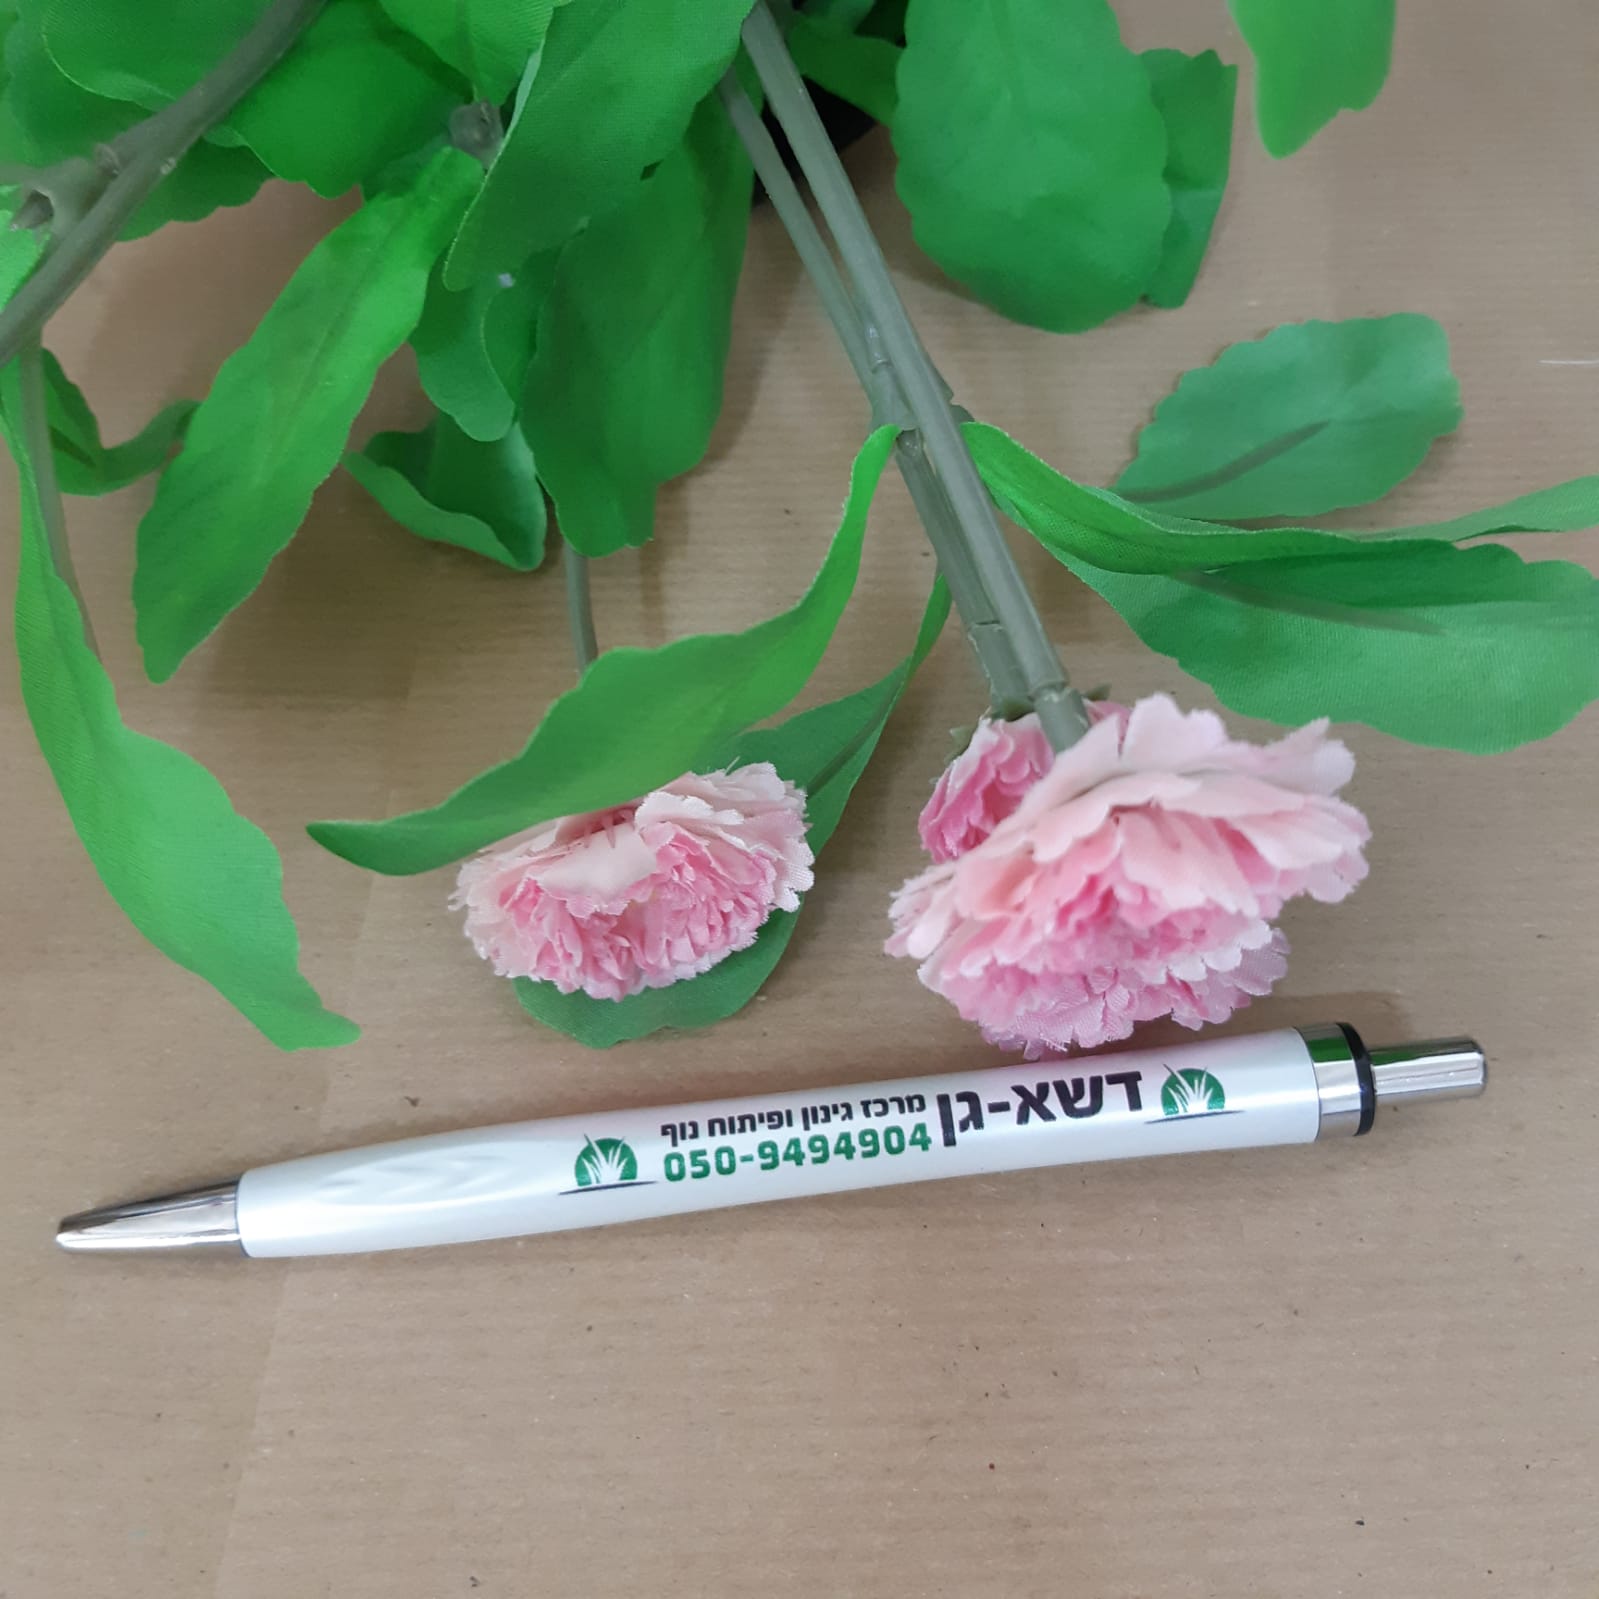 הדפסה צבעונית על עט איכותי עבור דשא וגן